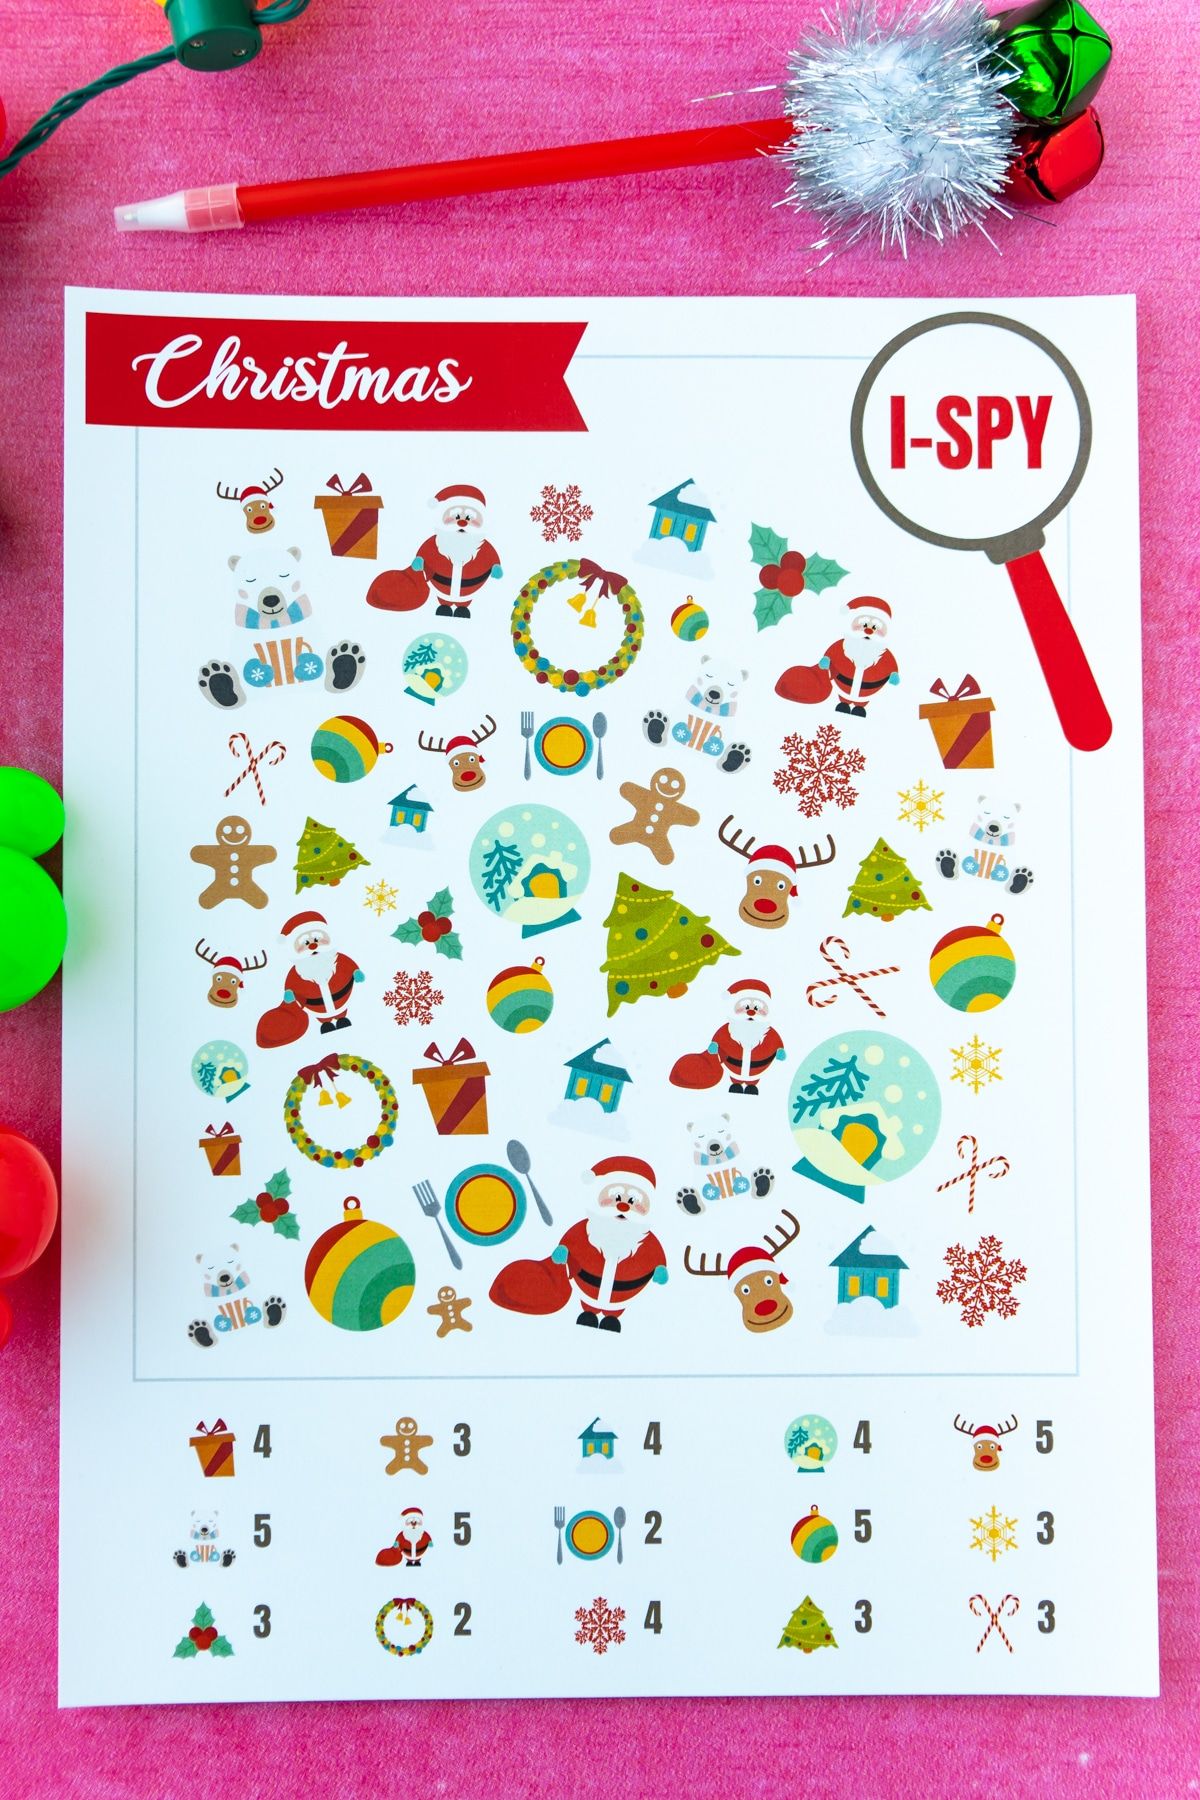 طبعت لعبة i-spy لعيد الميلاد على خلفية وردية اللون